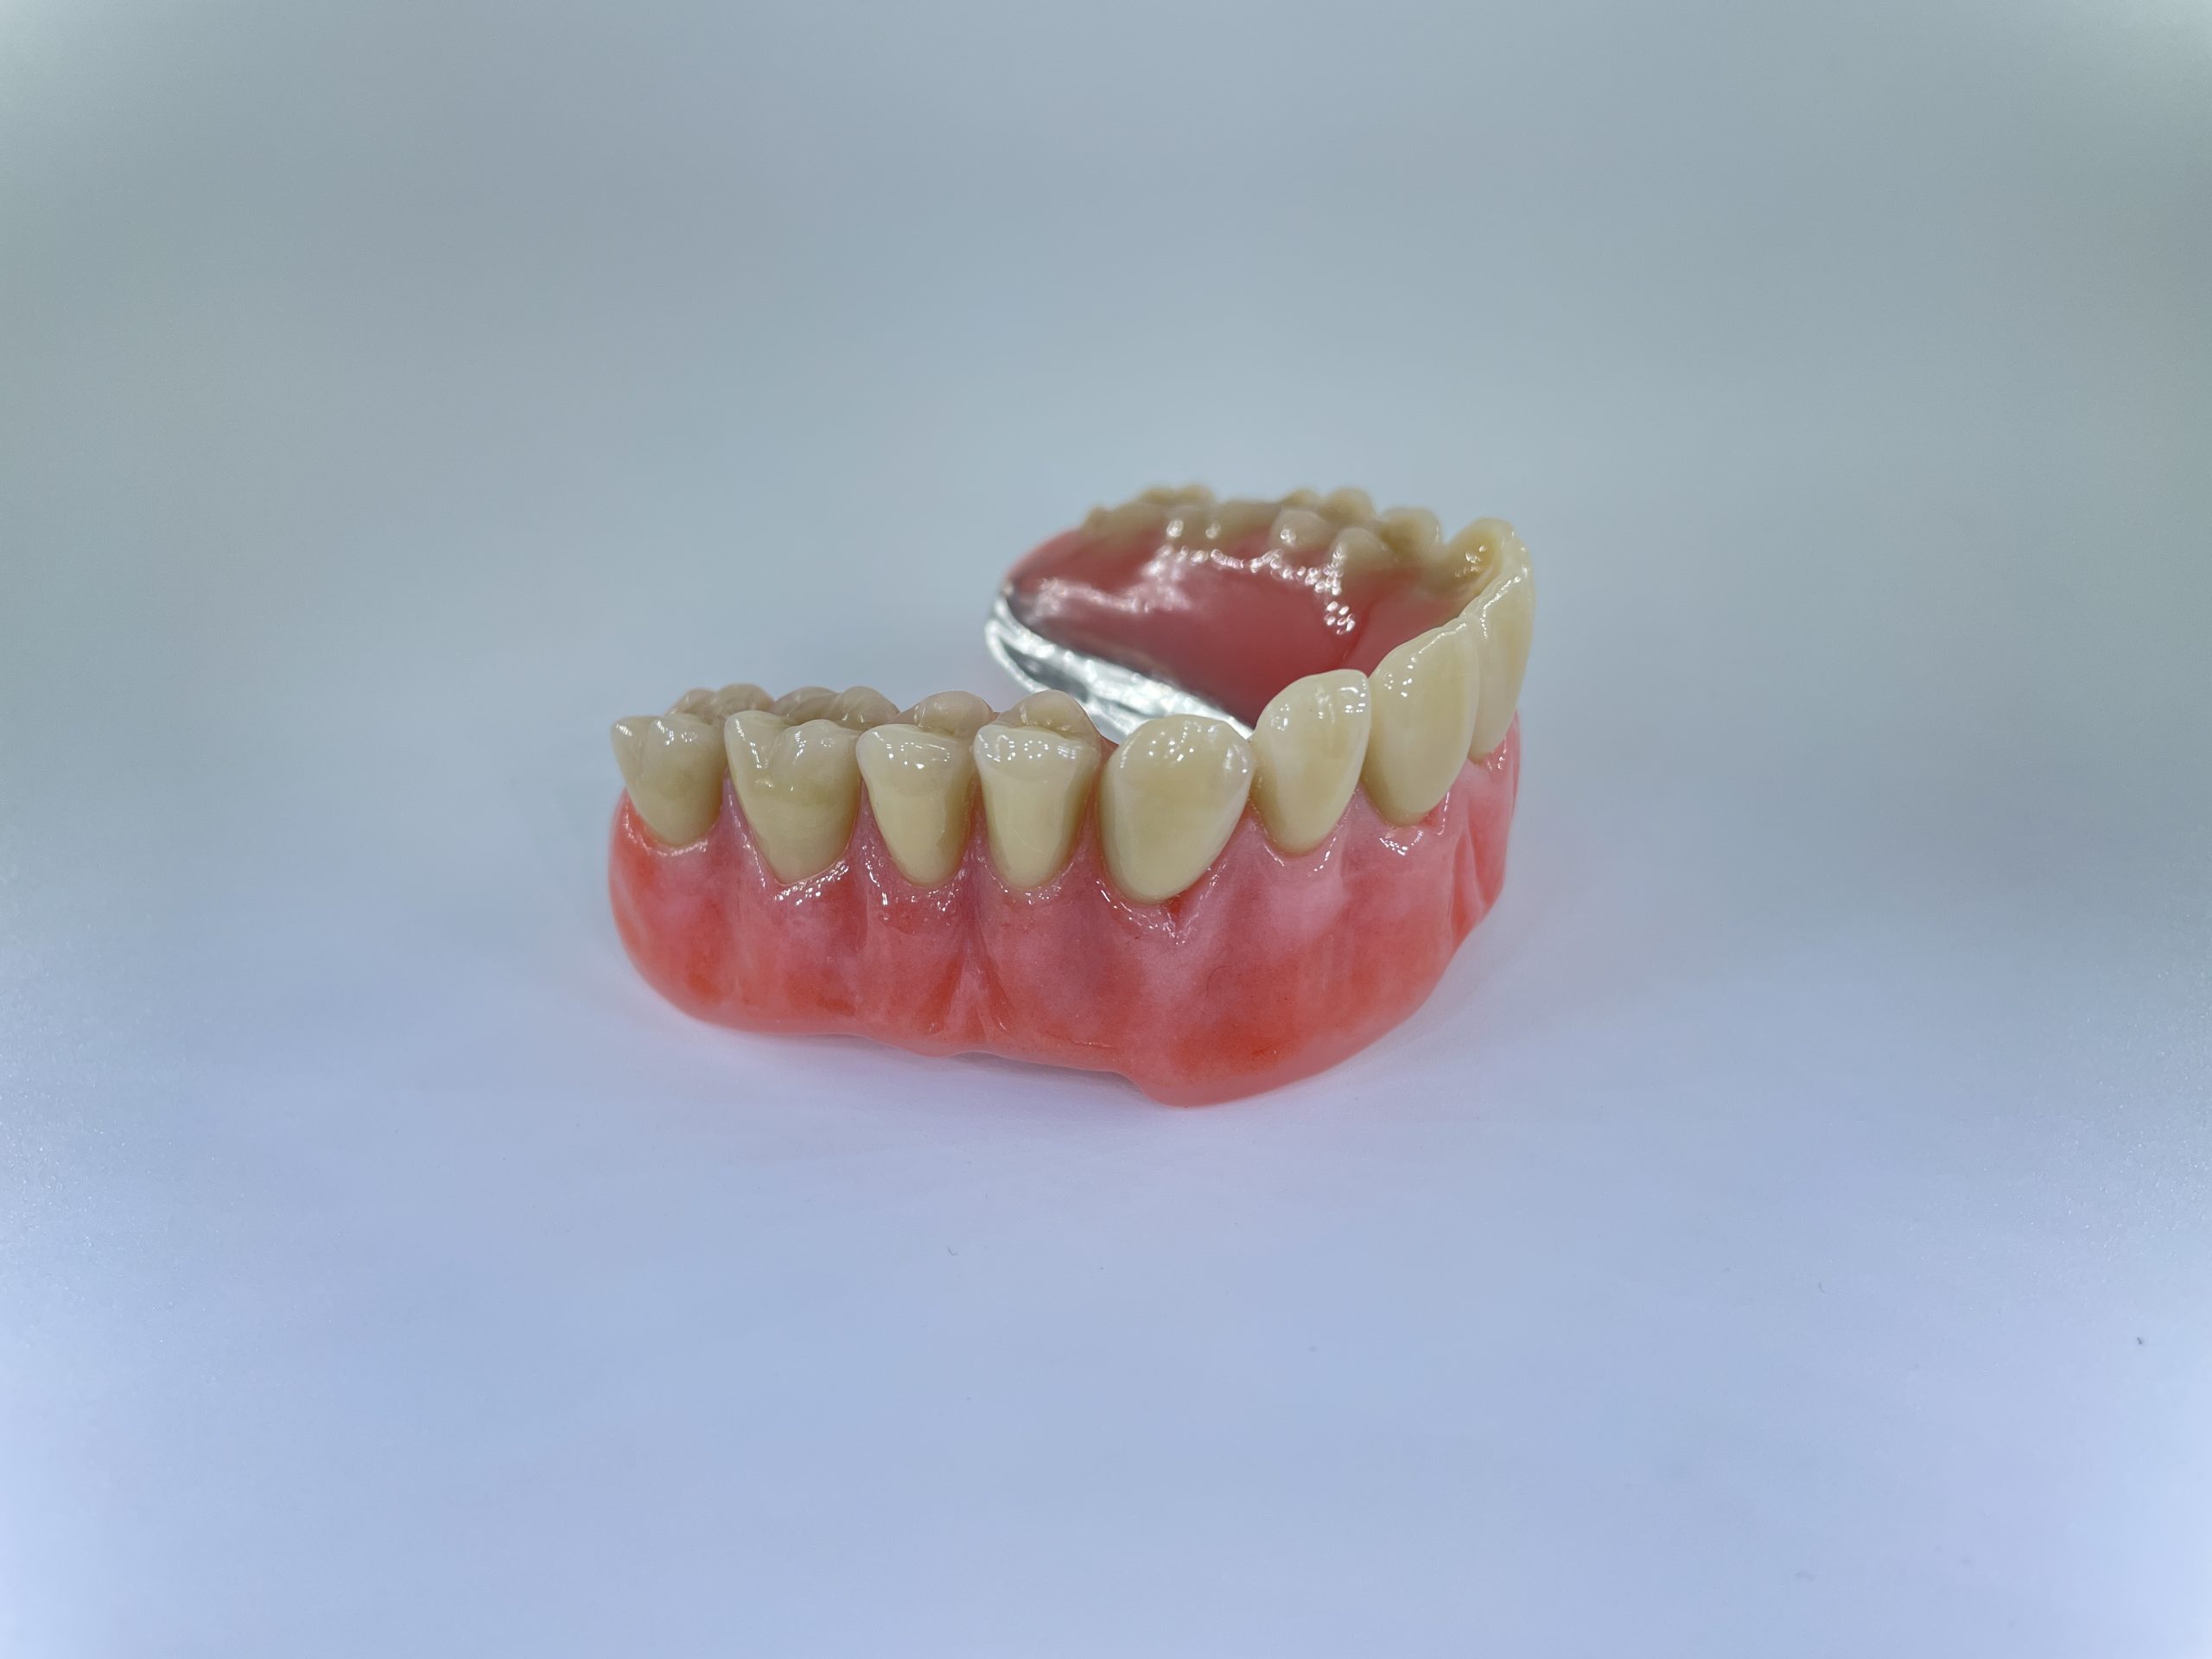 hybrid tandprotese til overmund omvendt Resultater af færdigeproduceret tandproteser venstre